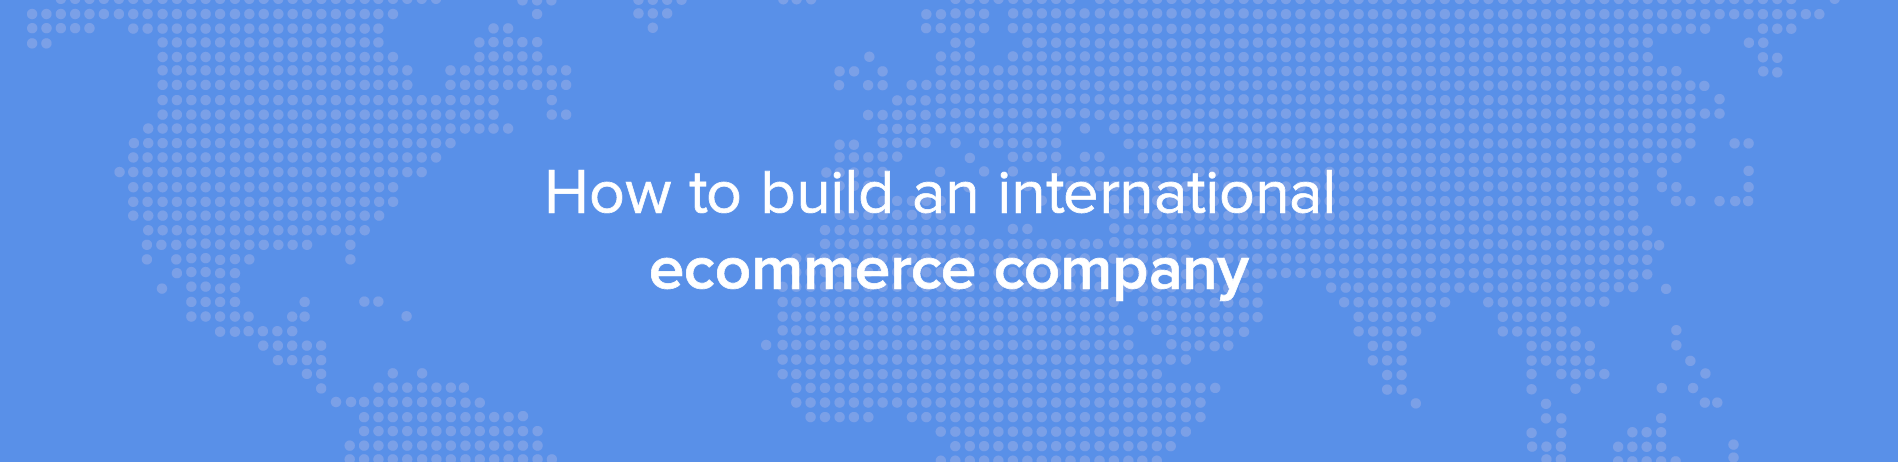 Como construir uma empresa de comércio electrónico internacional